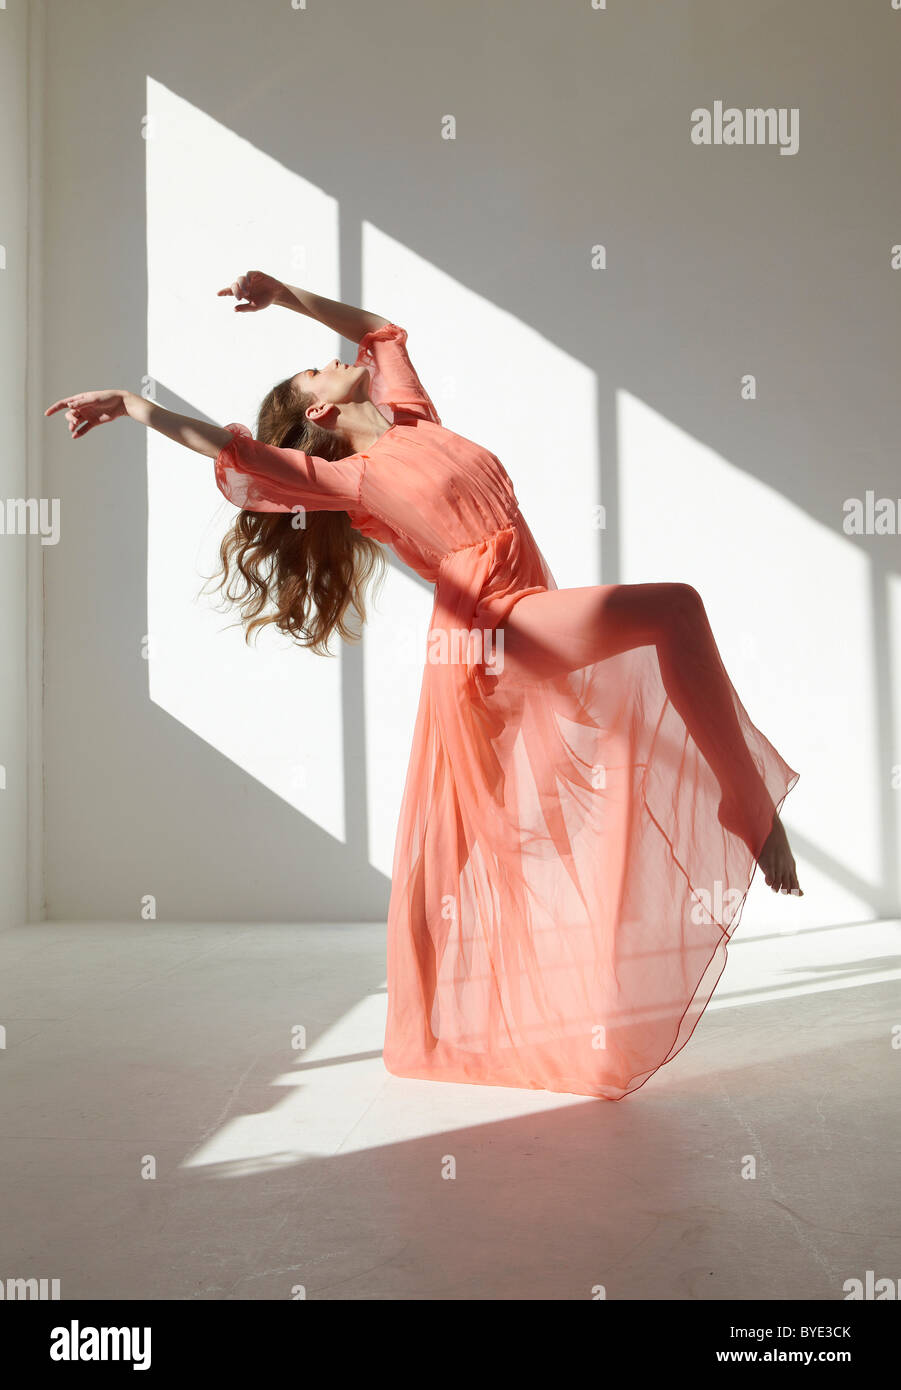 Danseur de Ballet portant une robe rouge dans une danse posent Banque D'Images